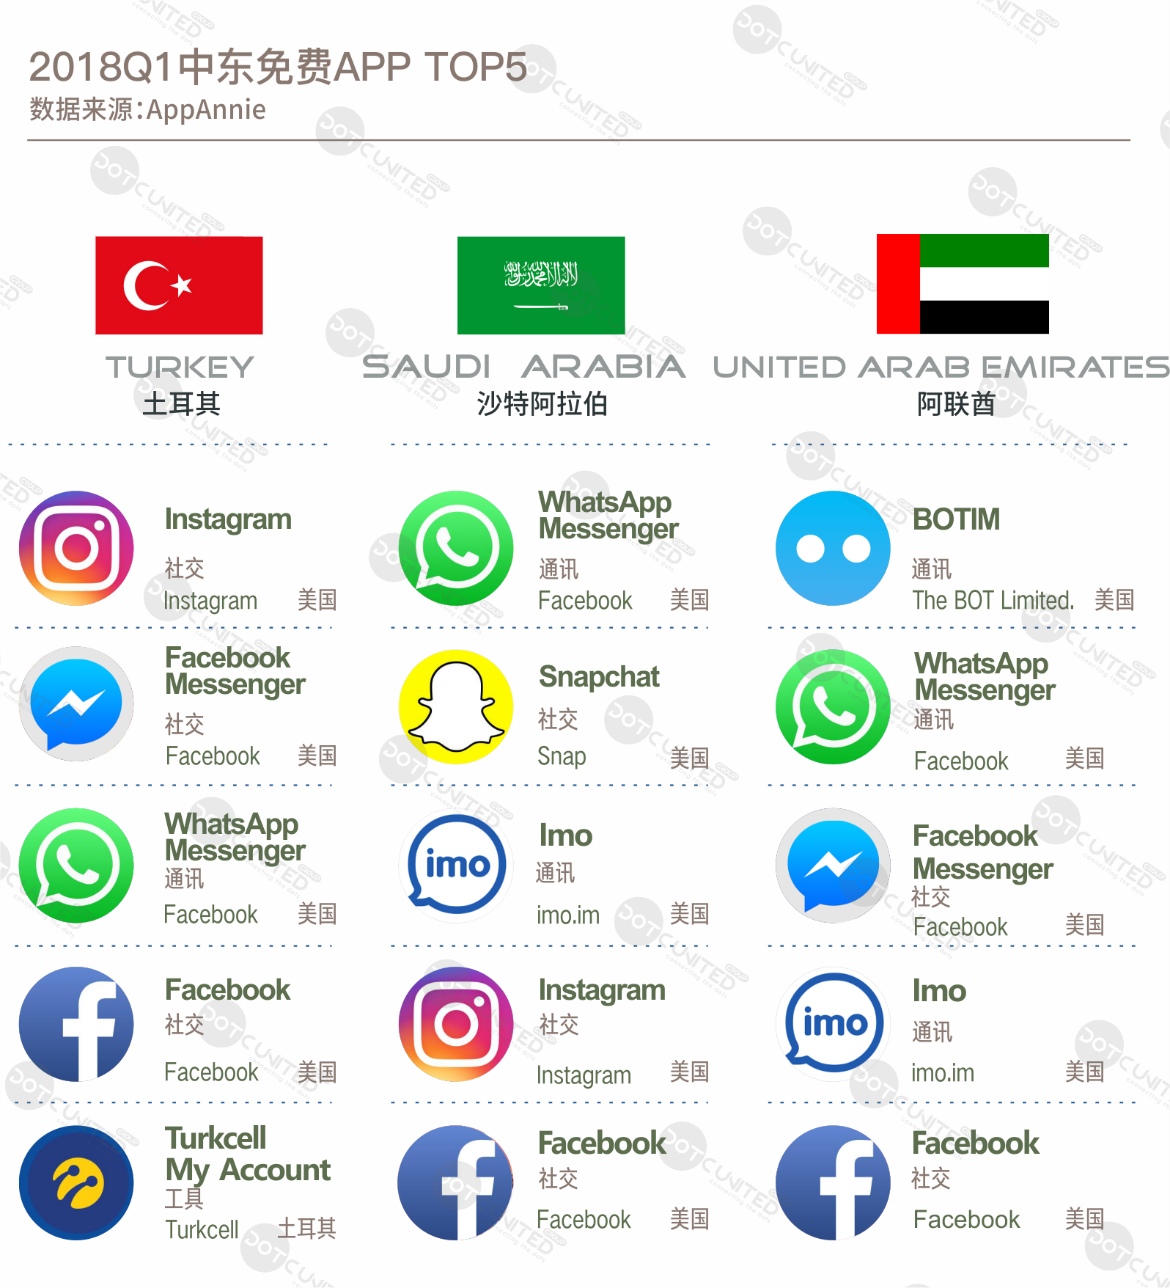 中东用户偏好社交产品 视觉引导型社交网络增长迅速